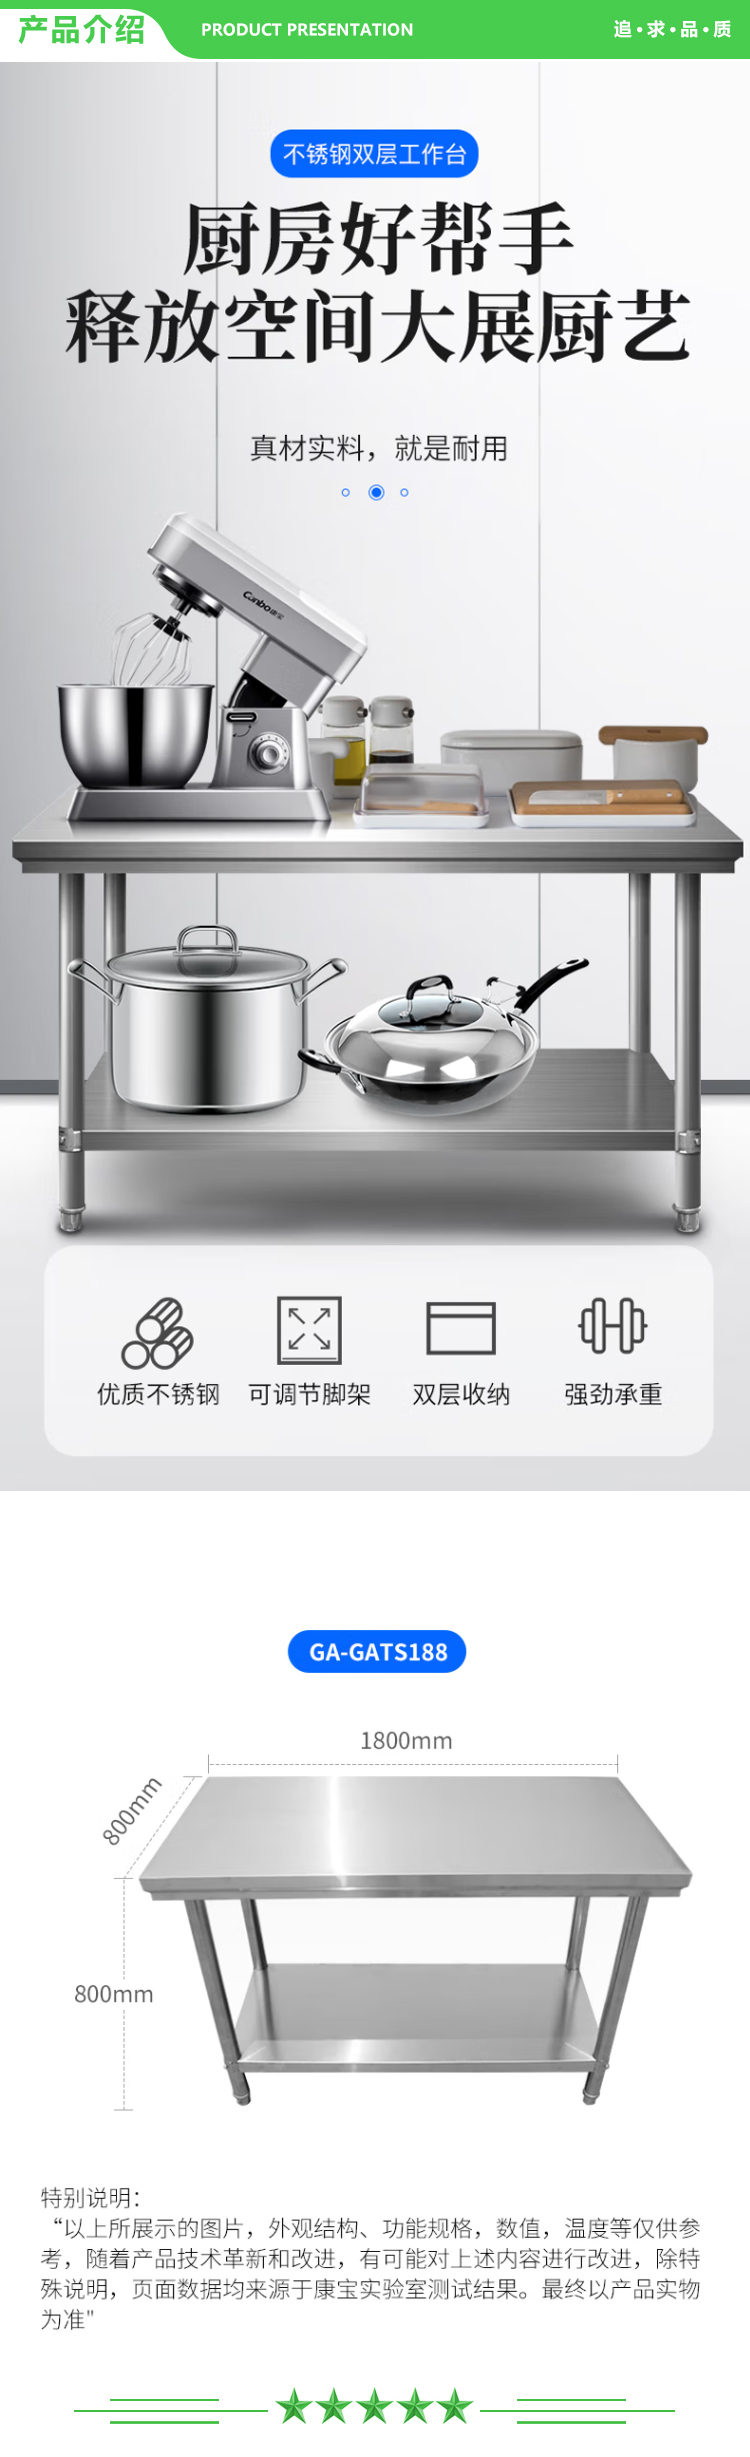 康宝 Canbo CA-GATS188 加厚不锈钢双层工作台商用 食堂后厨餐厅专用简易耐用工作台 .jpg